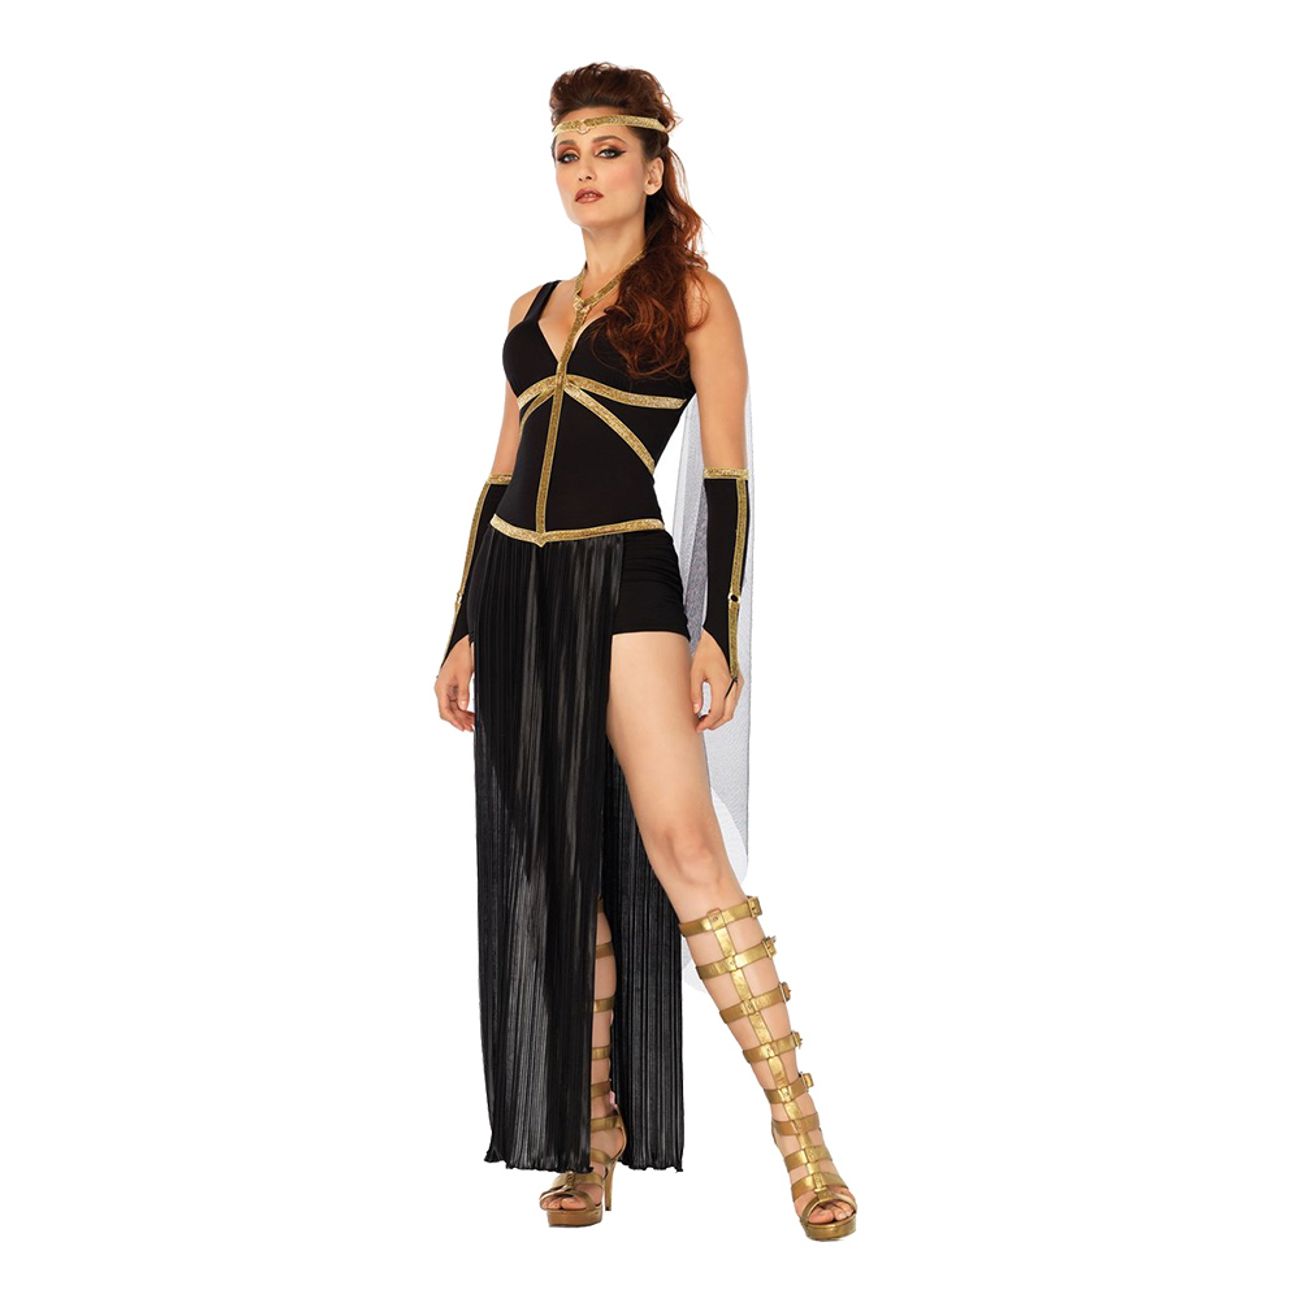 romersk-svart-gudinna-deluxe-maskeraddrakt-1